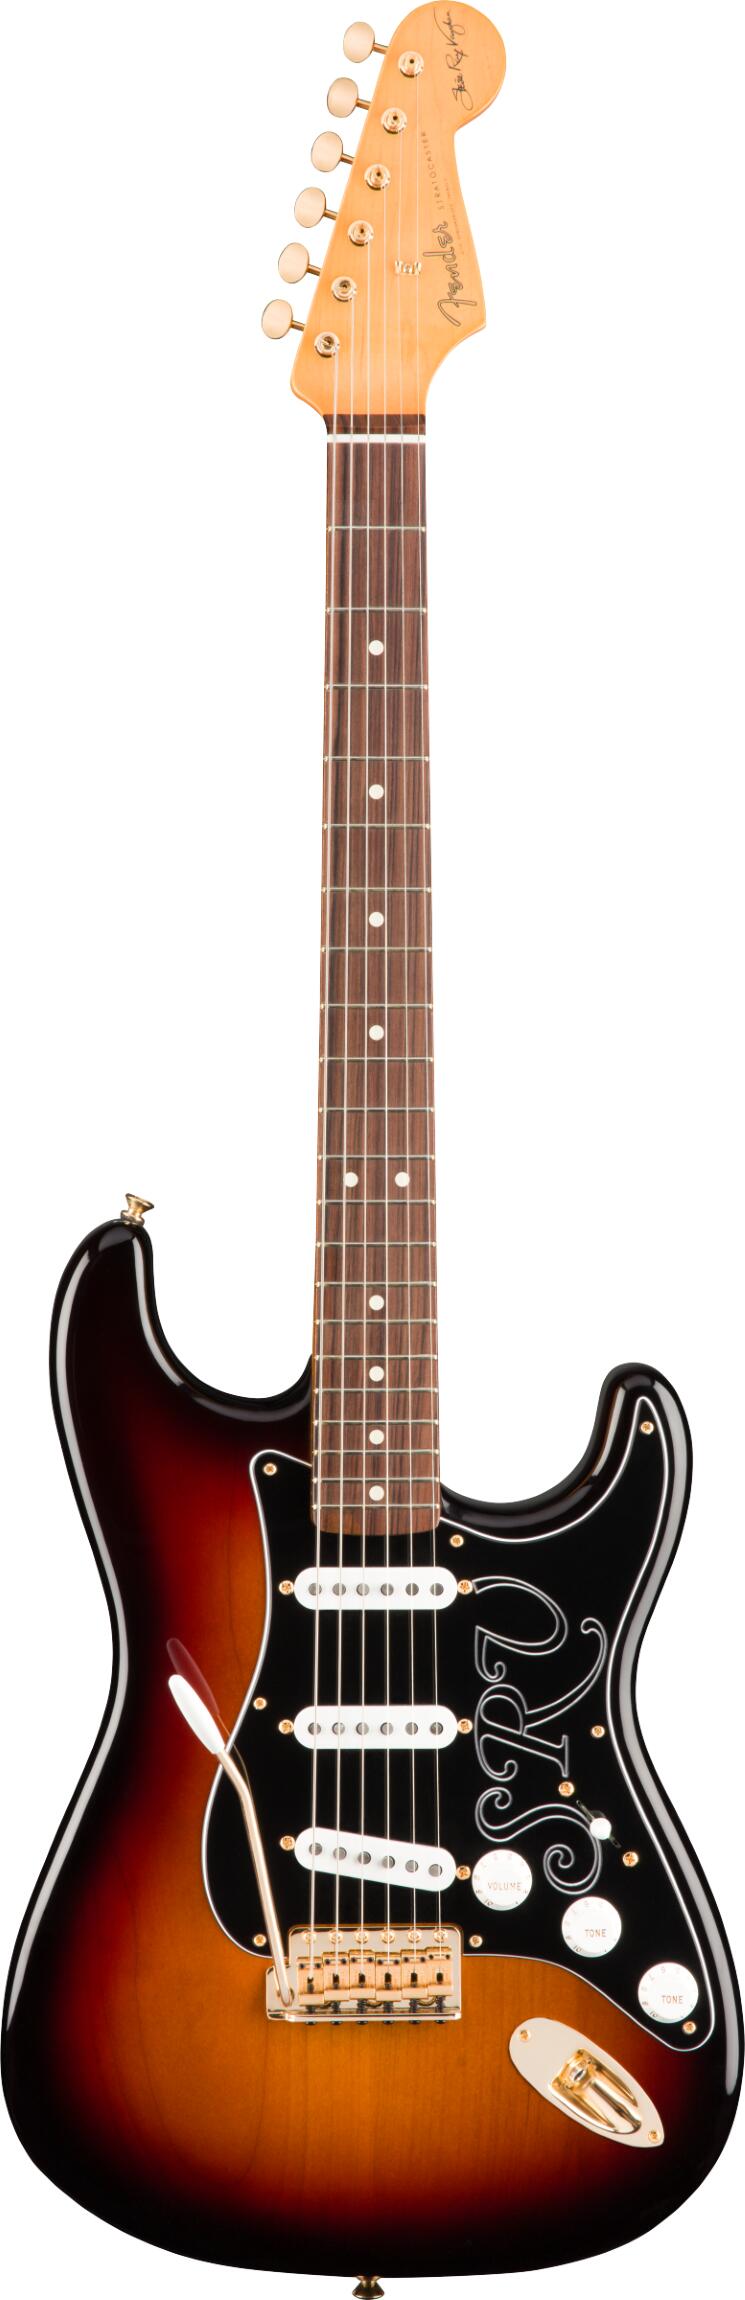 Fender Stevie Ray Vaughan Stratocaster Pau Ferro Griffbrett 3-Color Sunburst : photo 1